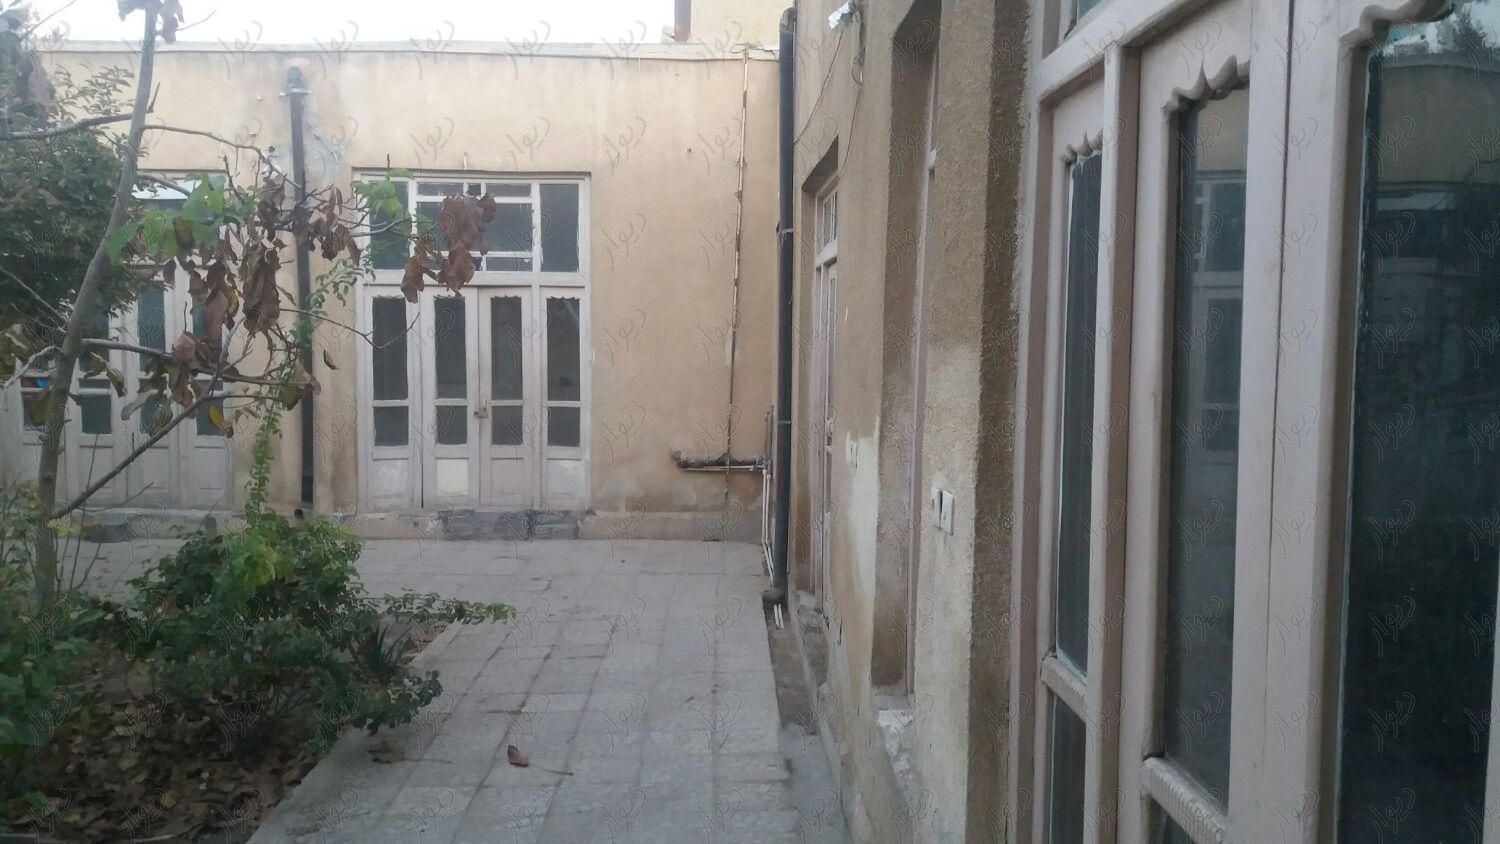 خانه کلنگی در خیابان پنج رمضان|فروش زمین و کلنگی|اصفهان, بیدآباد|دیوار